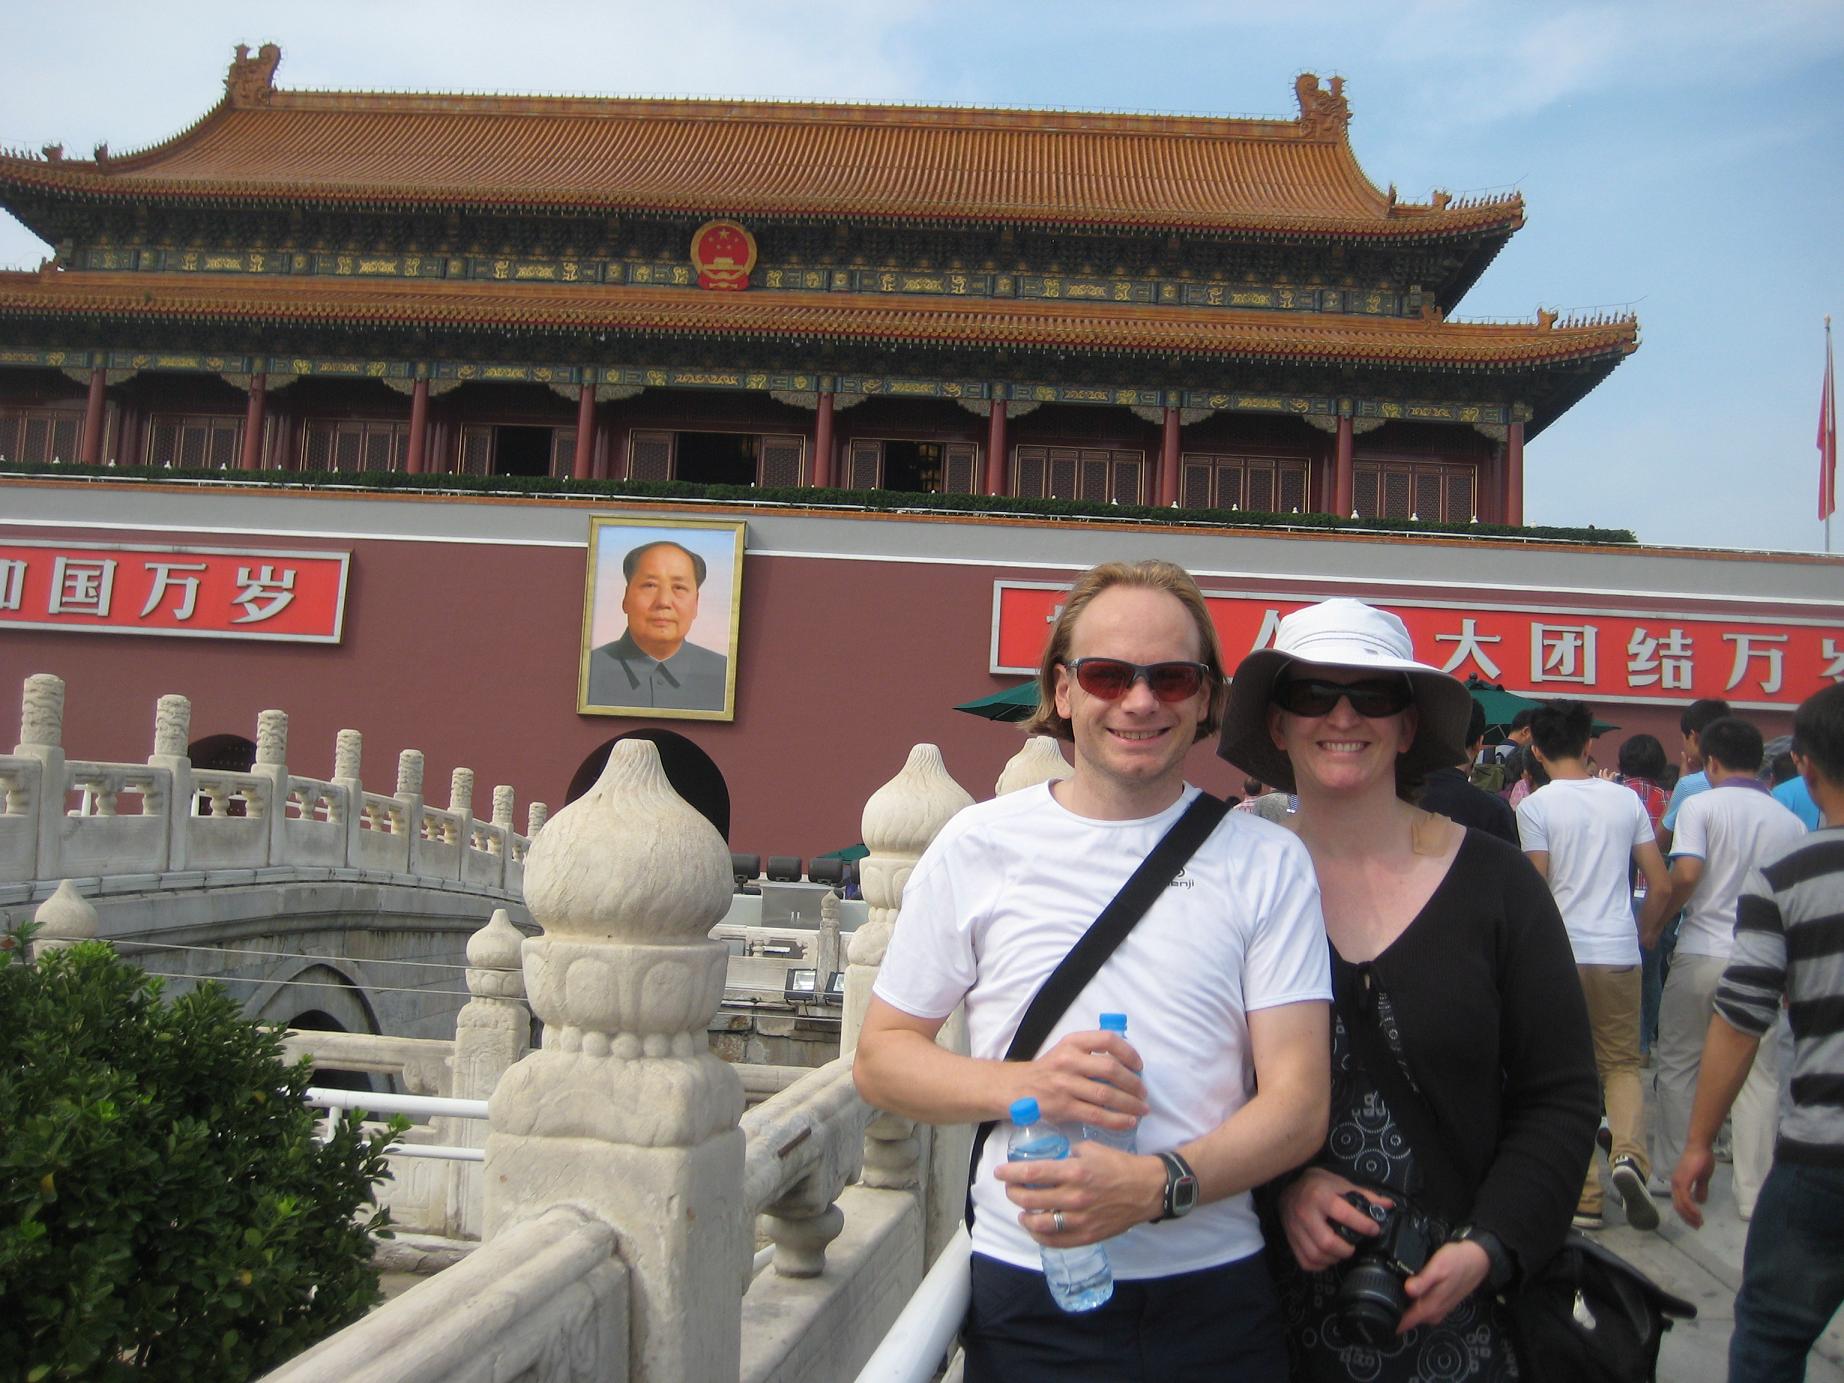 1844px x 1383px - In Beijing angekommen! Â« M & M Tibet Blog 2011